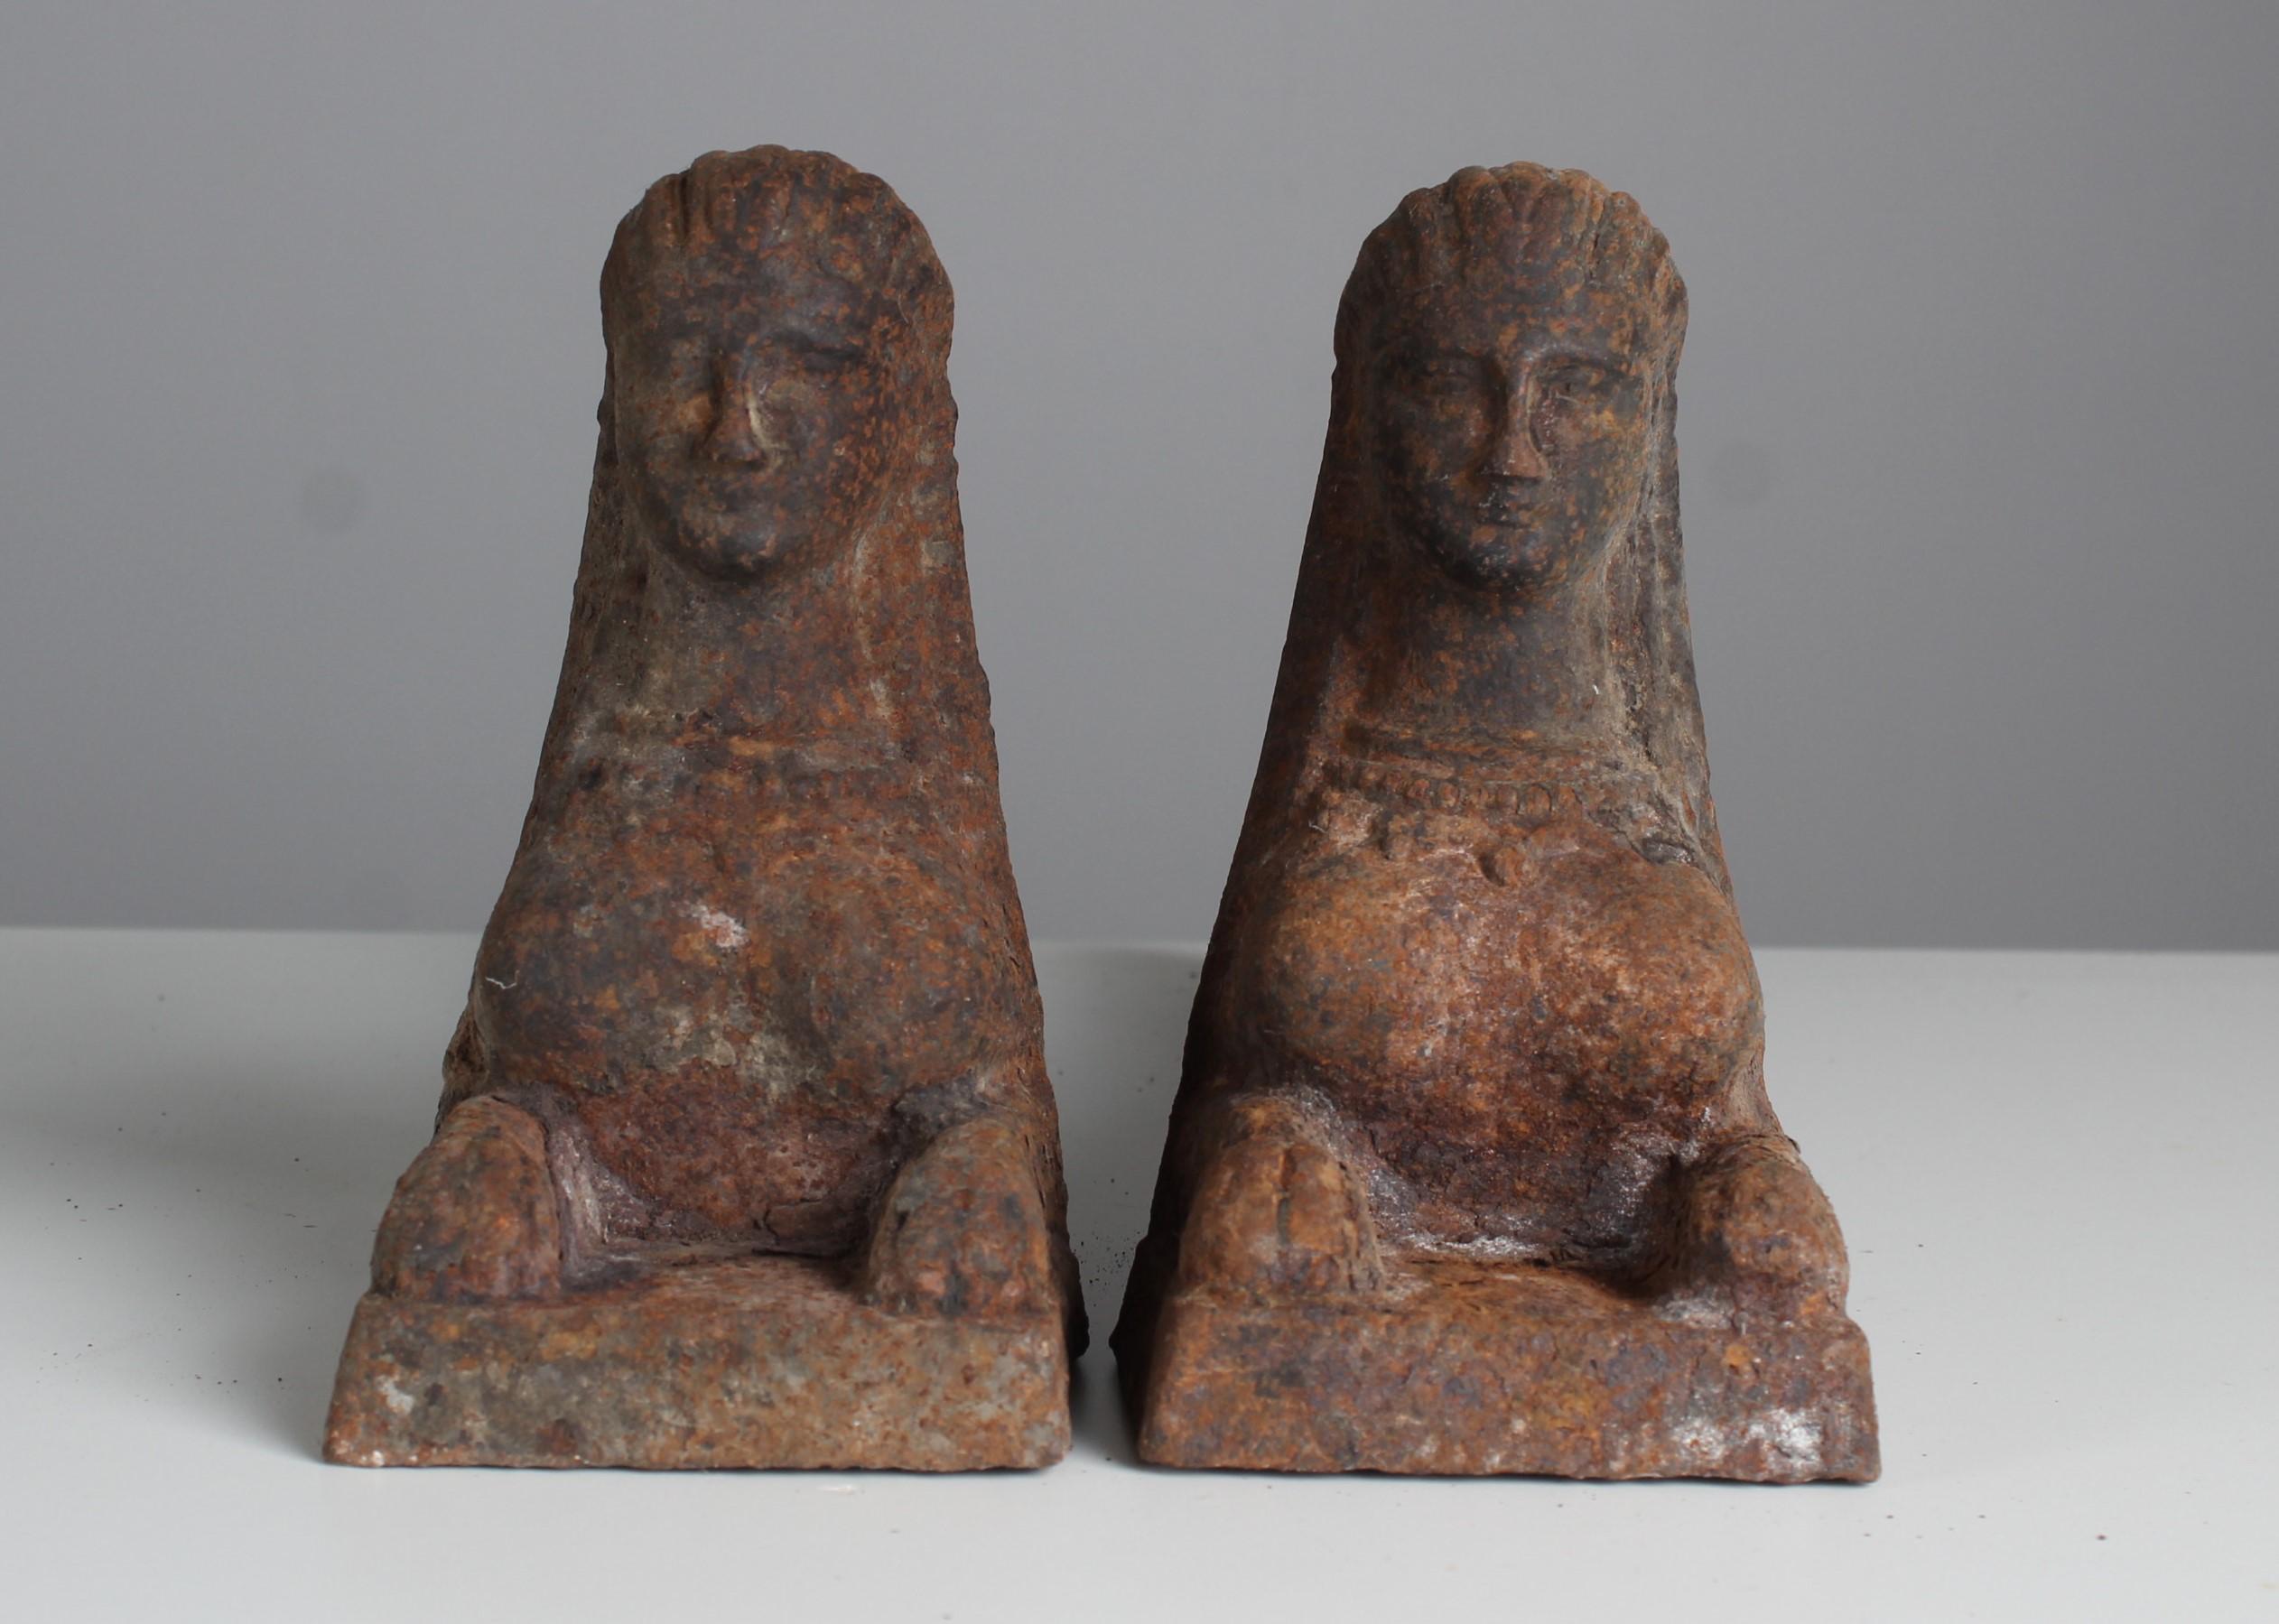 Ein Paar wunderbare Androns in Form einer Sphinx.
Frankreich, um 1860.
Solides Eisen in altersgemäß gutem Zustand.

Firedogs werden als Halter für Brennholz in einem Kamin verwendet. Sie sind auch als Feuerpferd, Andiron oder Schornsteinblock